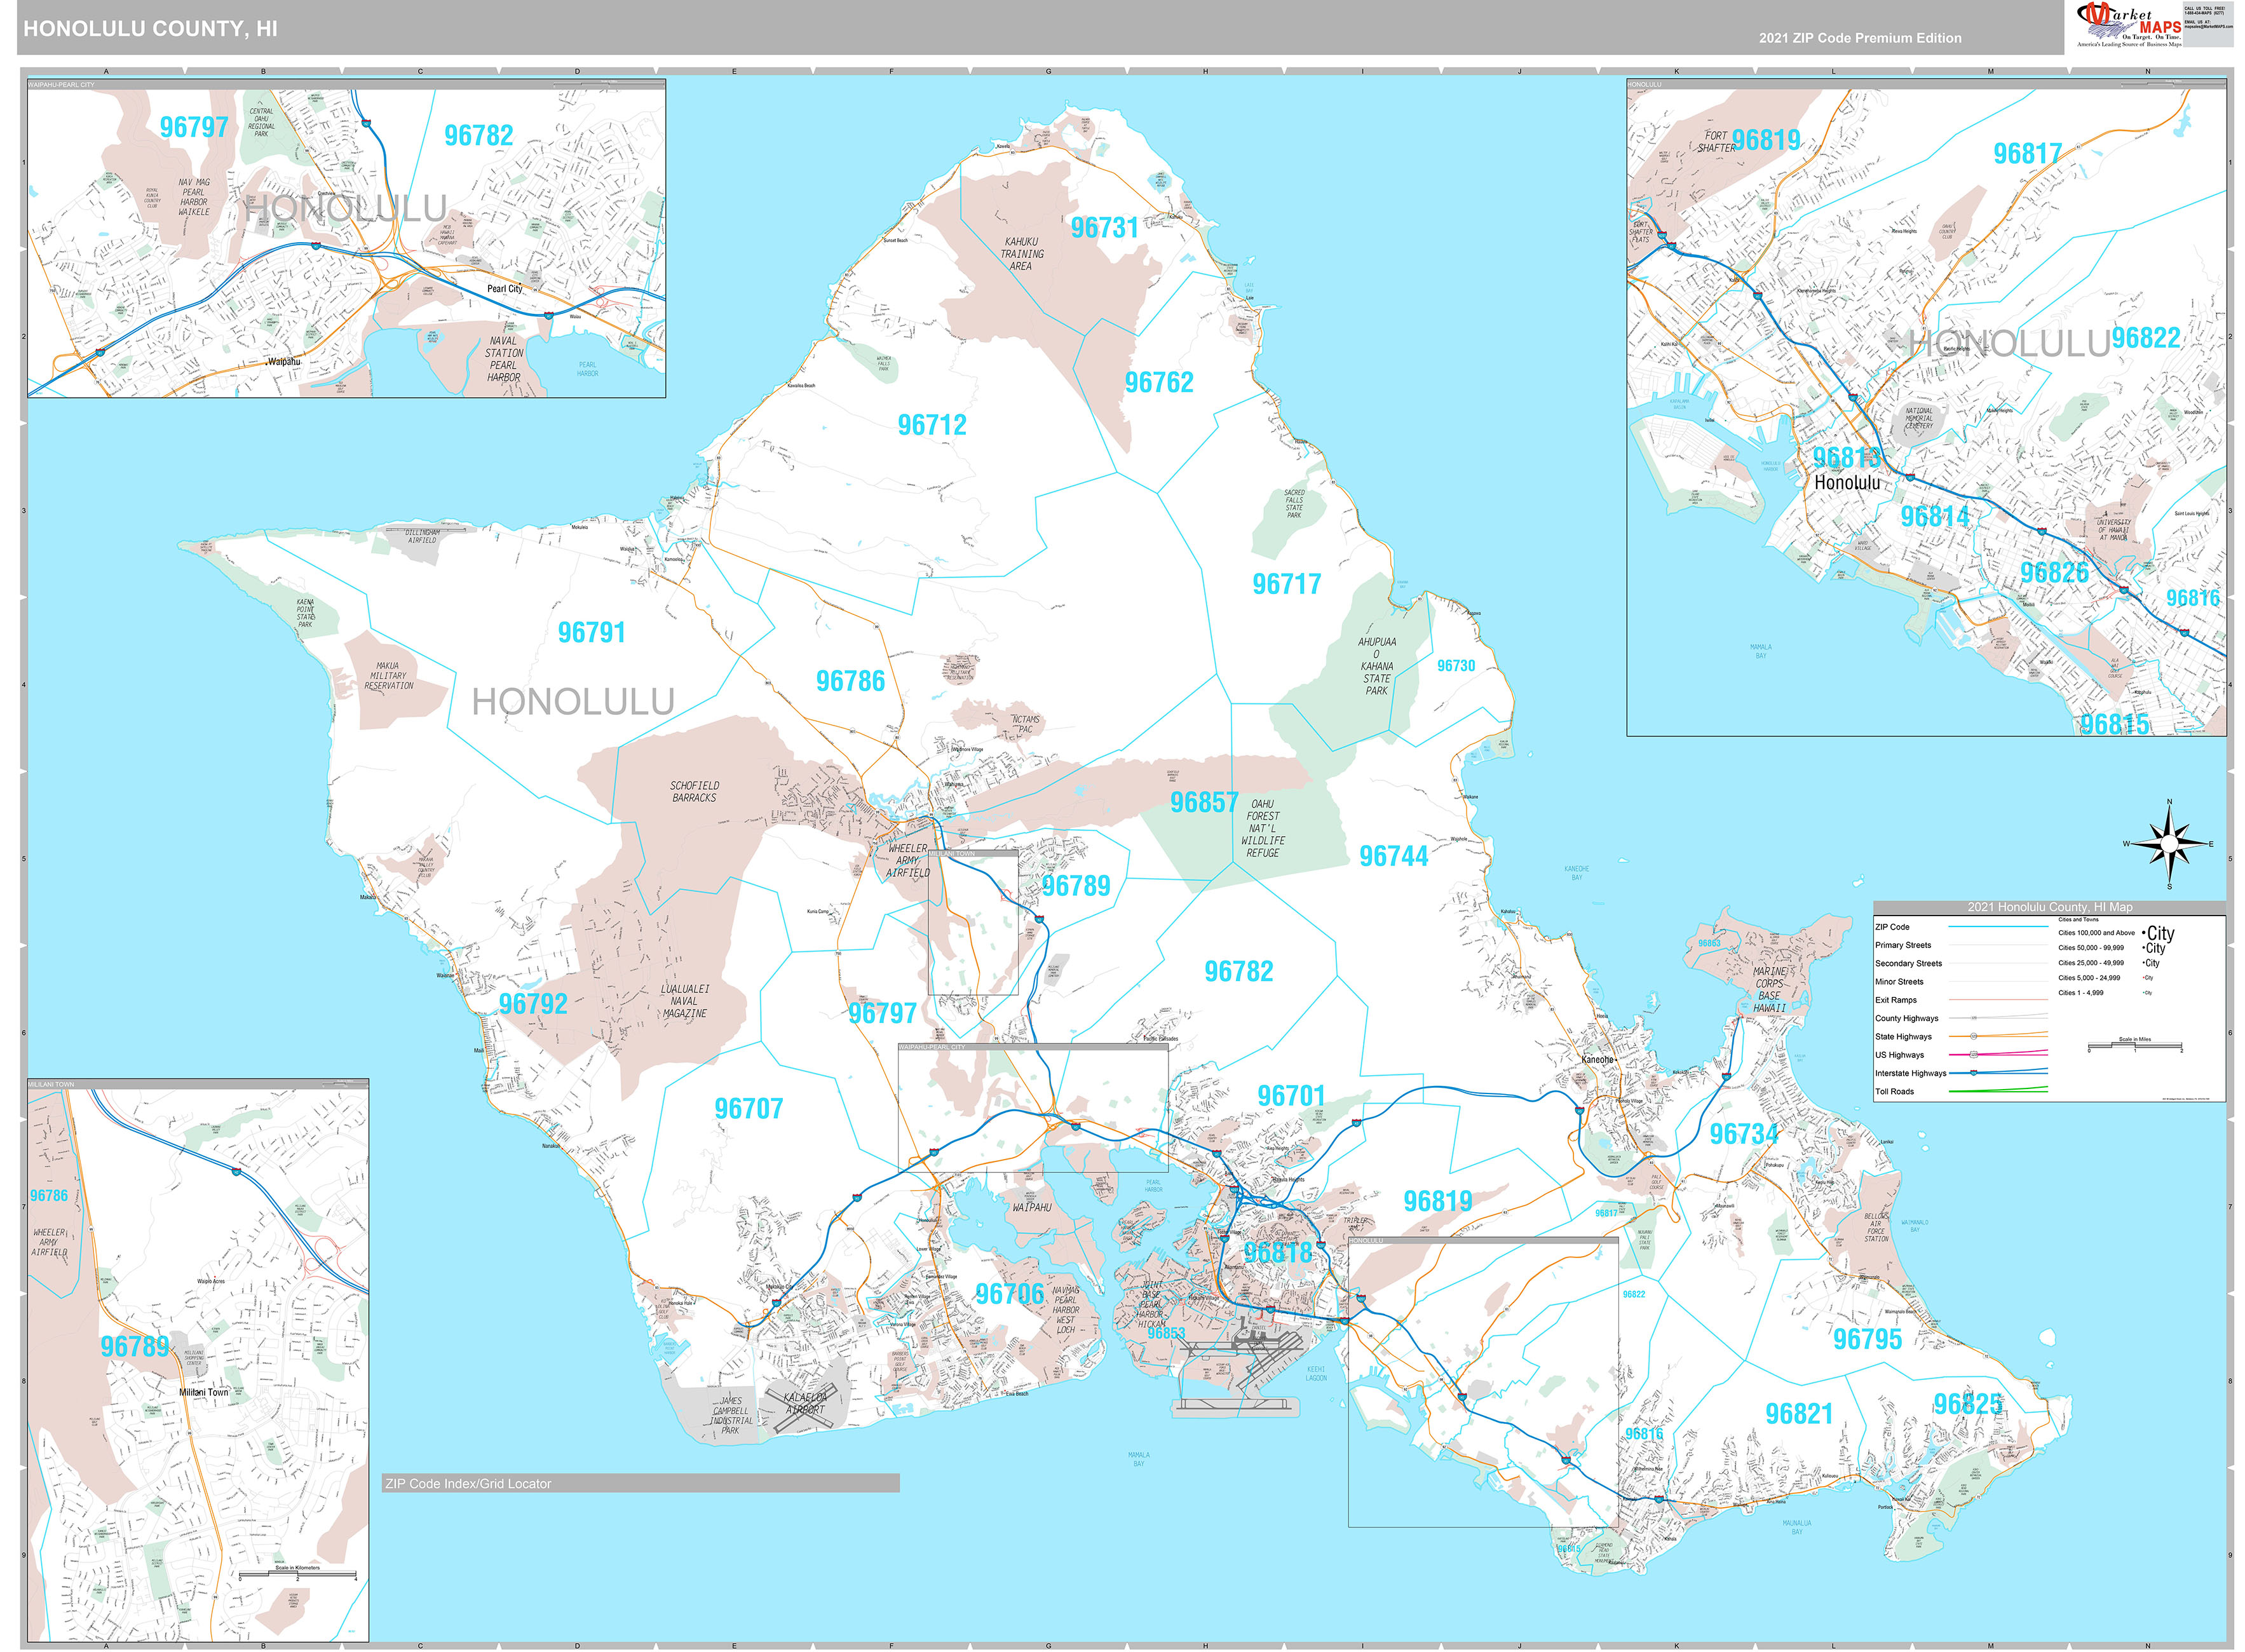 Honolulu County, HI Wall Map Premium Style by MarketMAPS MapSales